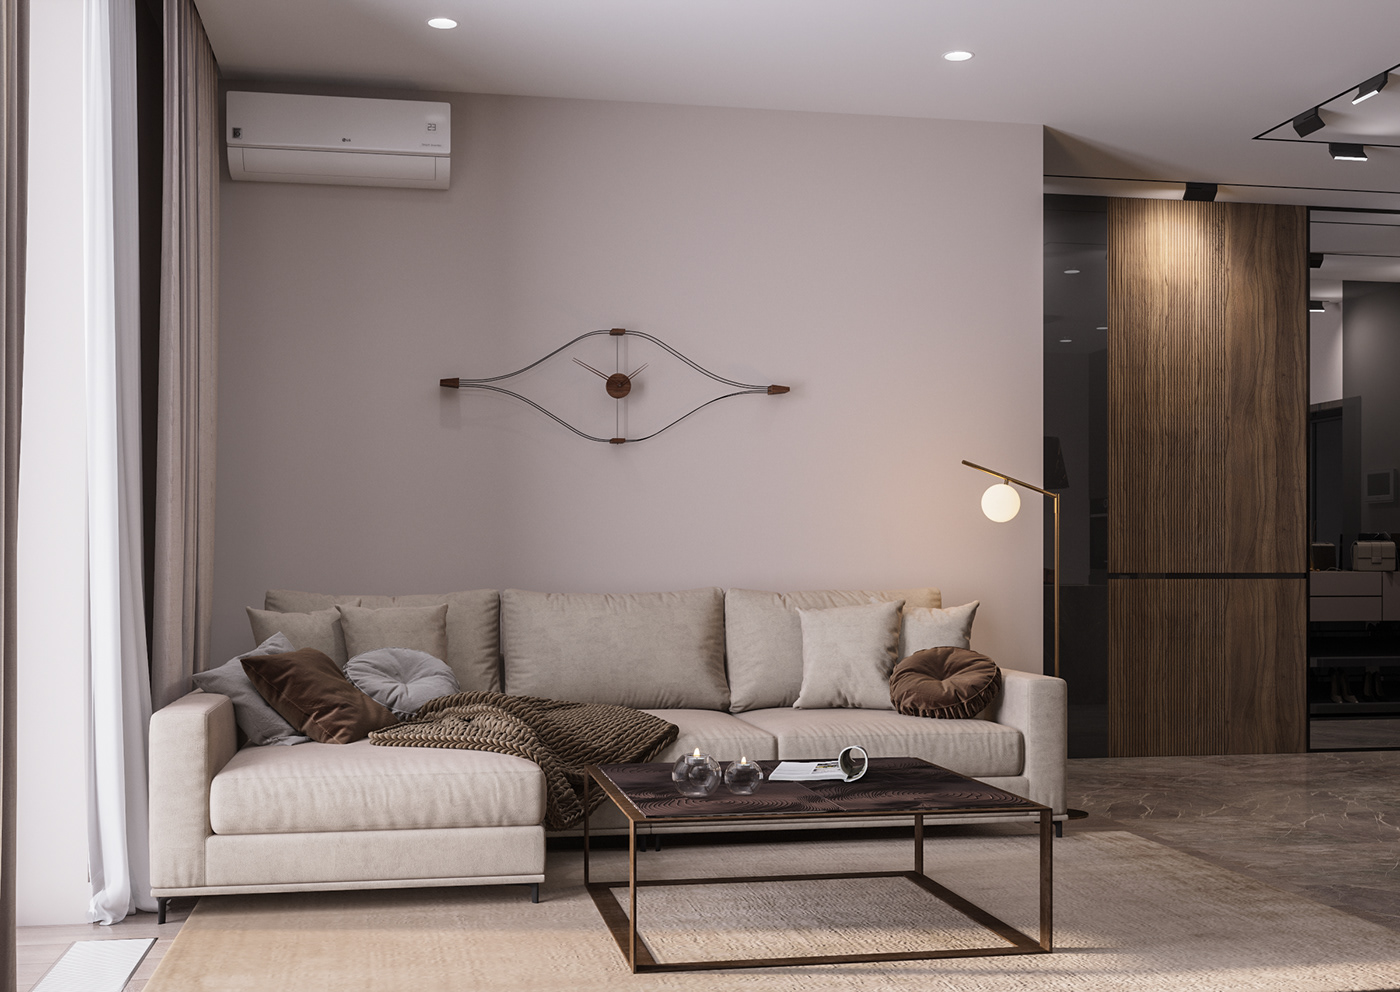 Minimalism studio kitchen livingroom design dark Interior beige